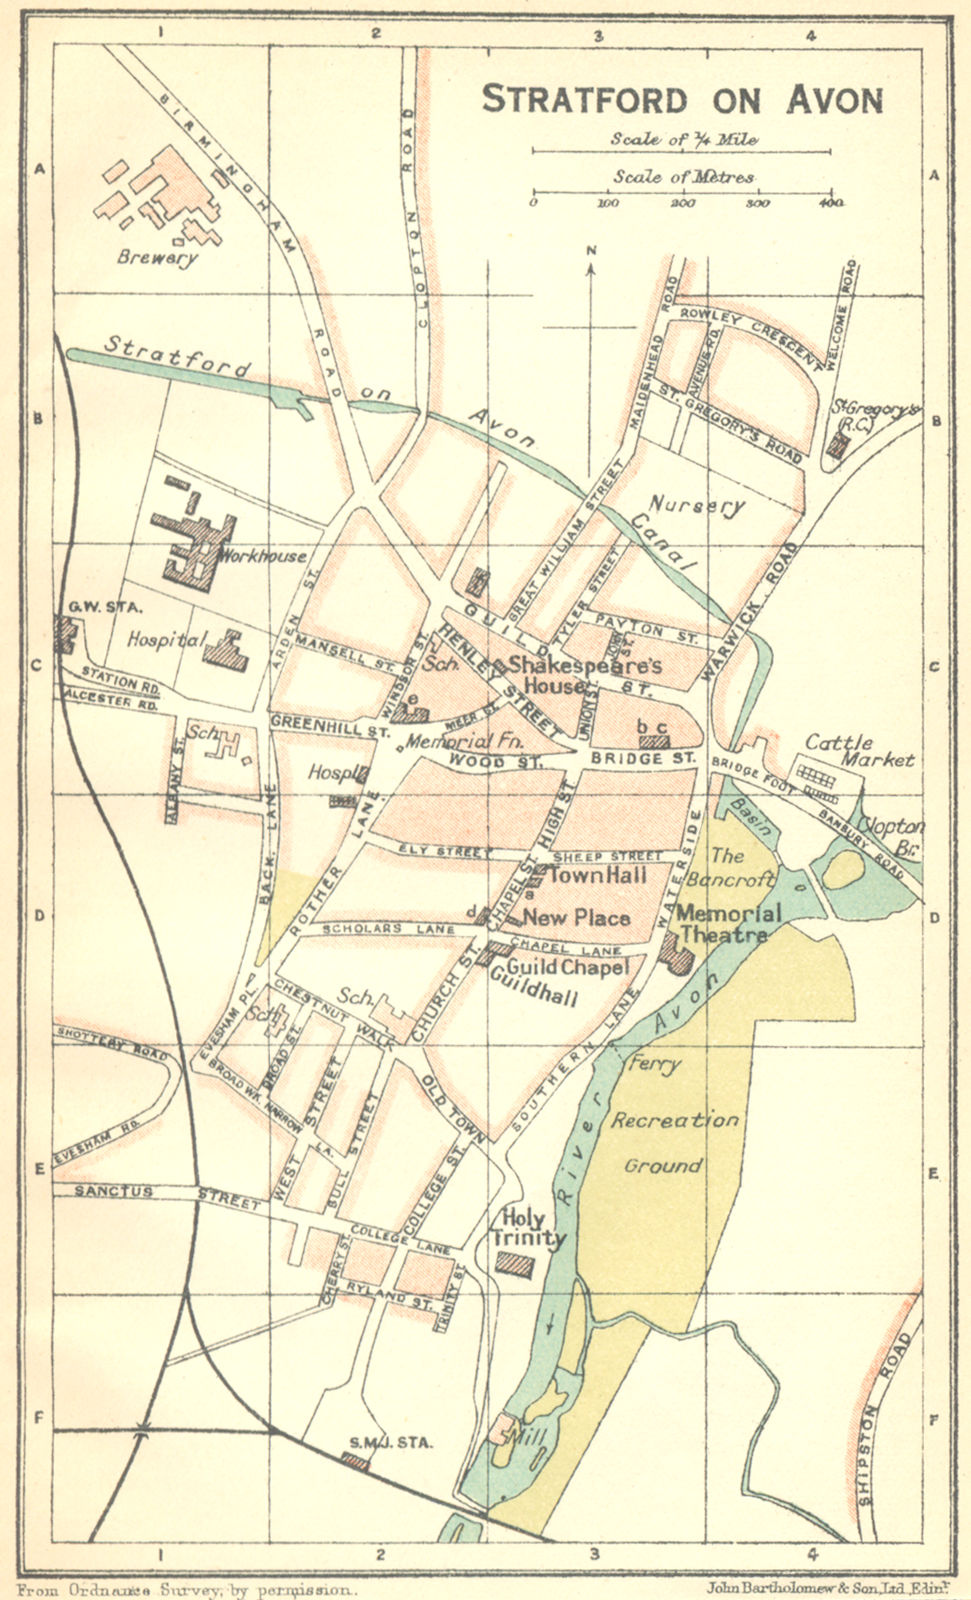 WARCS. Stratford on Avon 1924 old vintage map plan chart